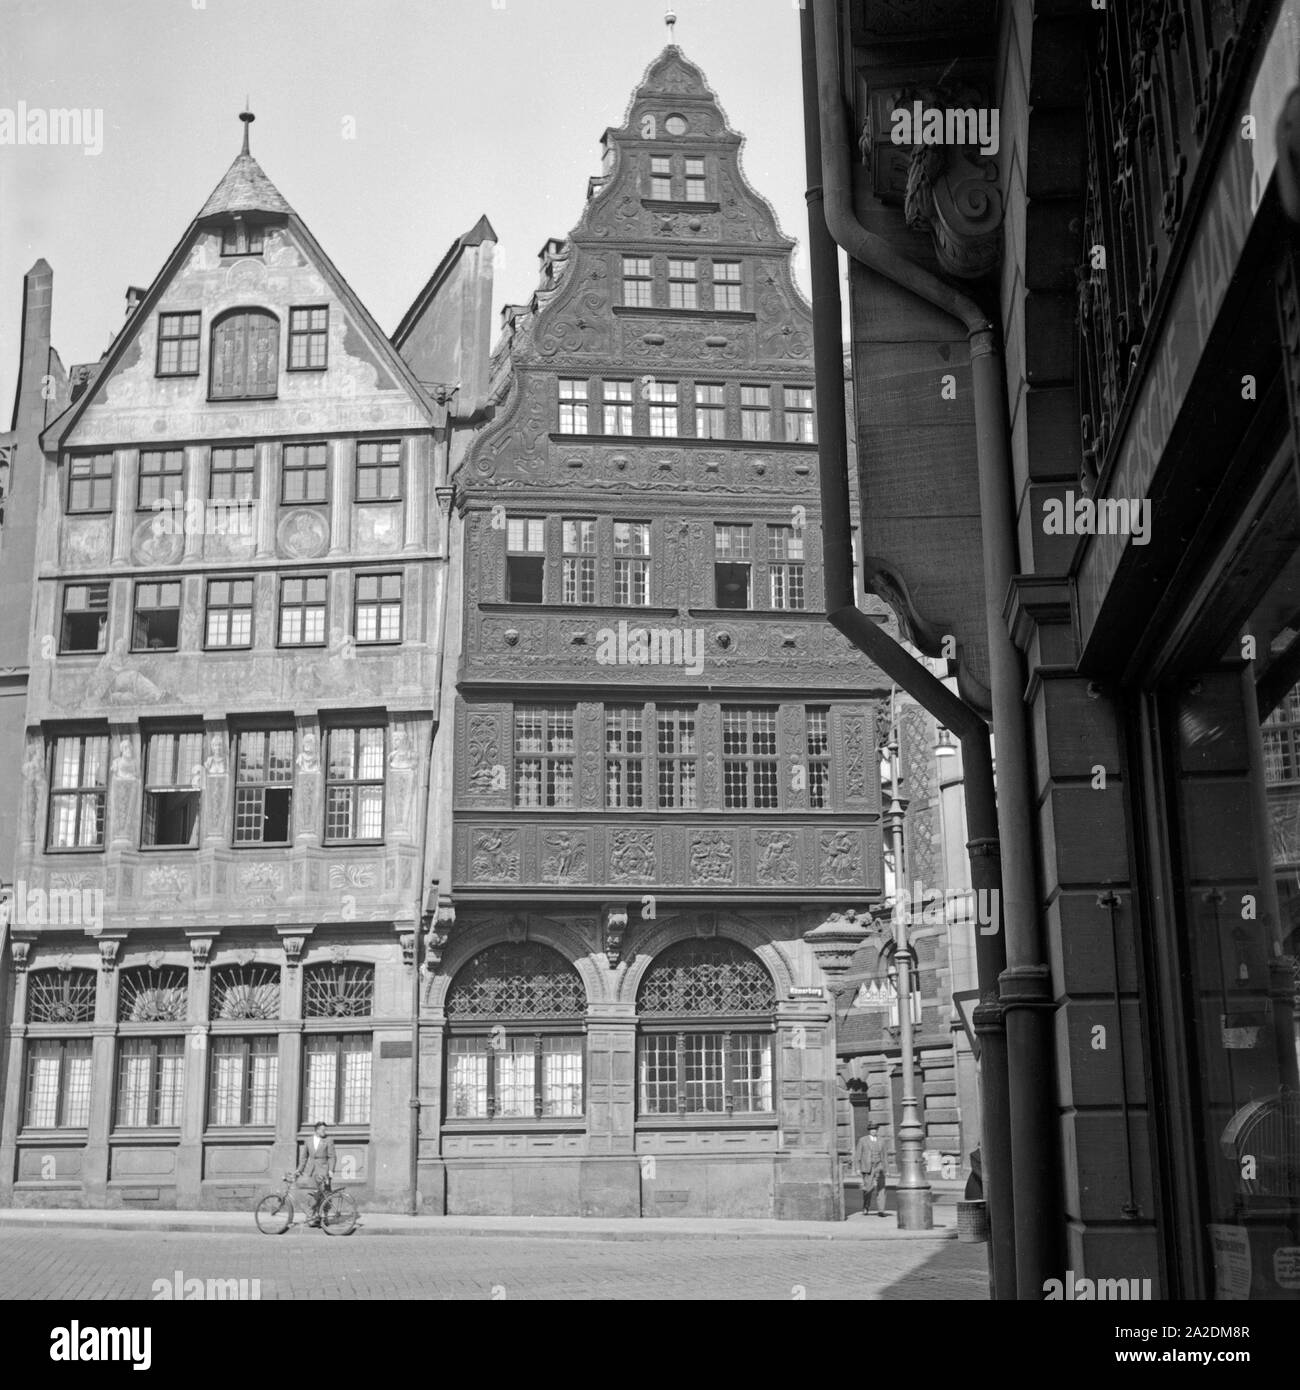 Häuserzeile am Römerberg in der Altstadt von Frankfurt am Main, Deutschland 1930er Jahre. Fila di case a Roemerberg nella città vecchia di Francoforte in Germania 1930s. Foto Stock